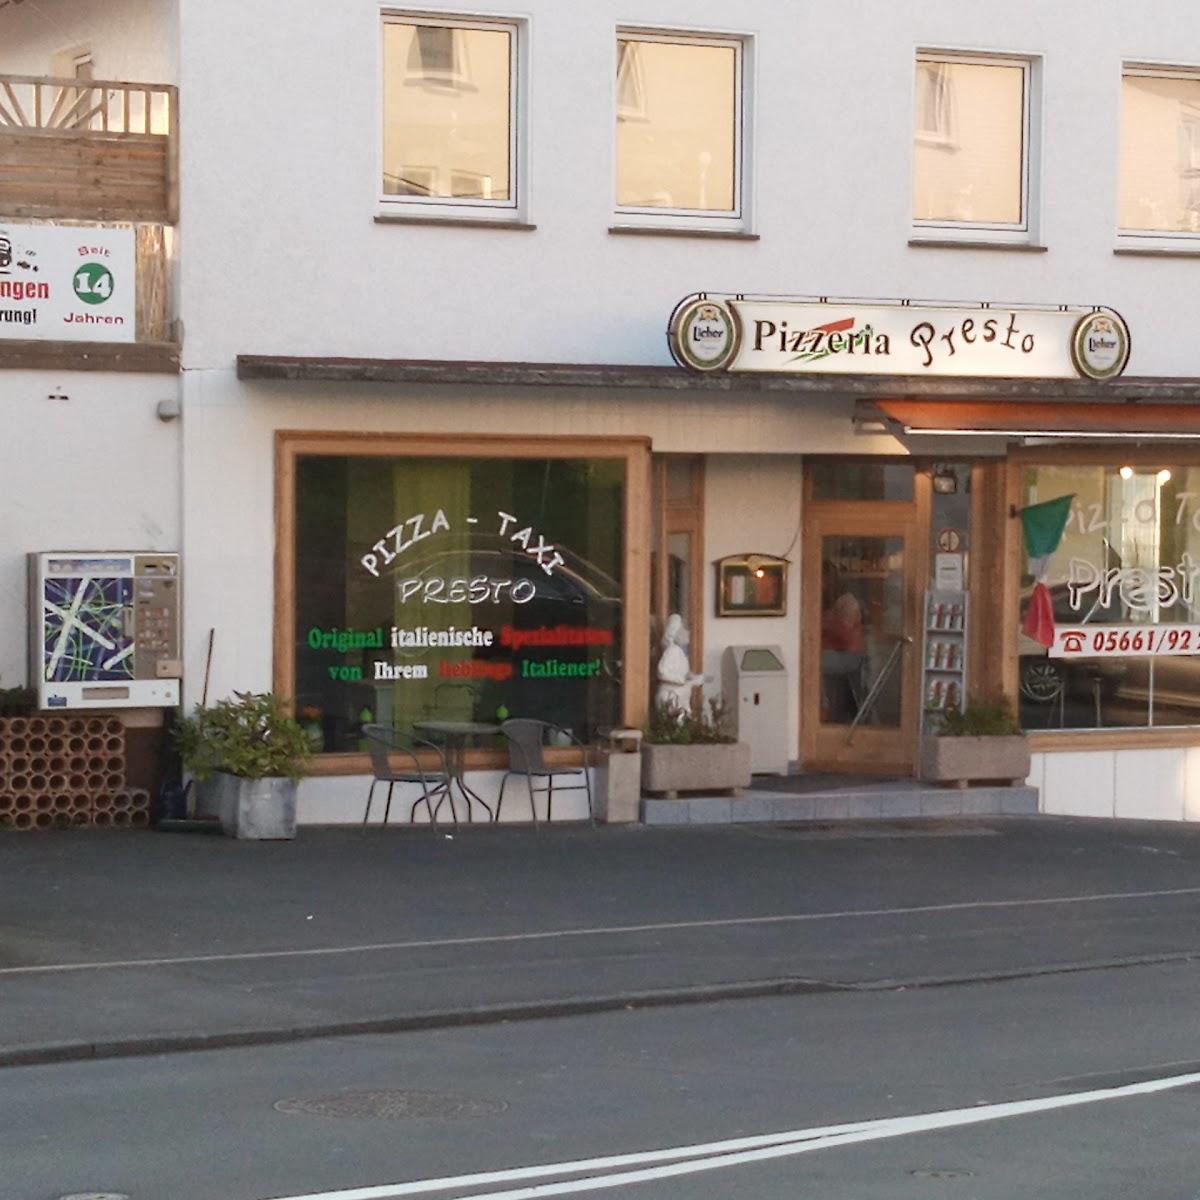 Restaurant "Pizza Taxi Presto" in Melsungen